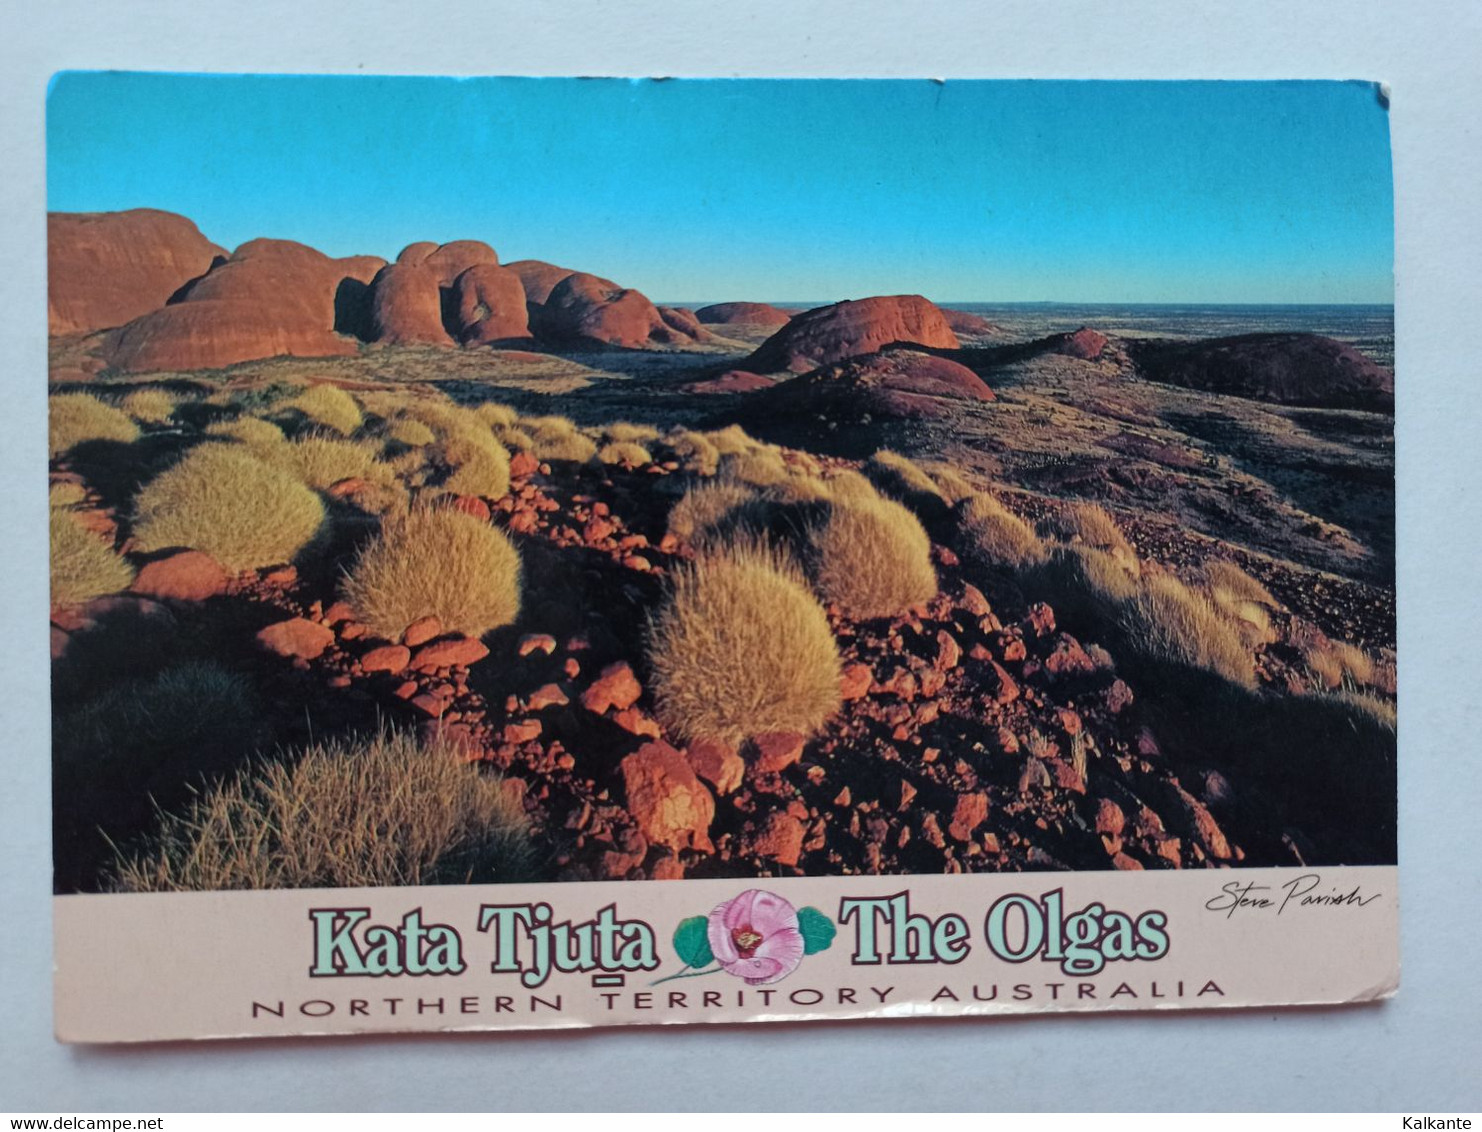 [NORTHERN TERRITORY] - THE OLGAS - Kata Tjuta - Uluru & The Olgas